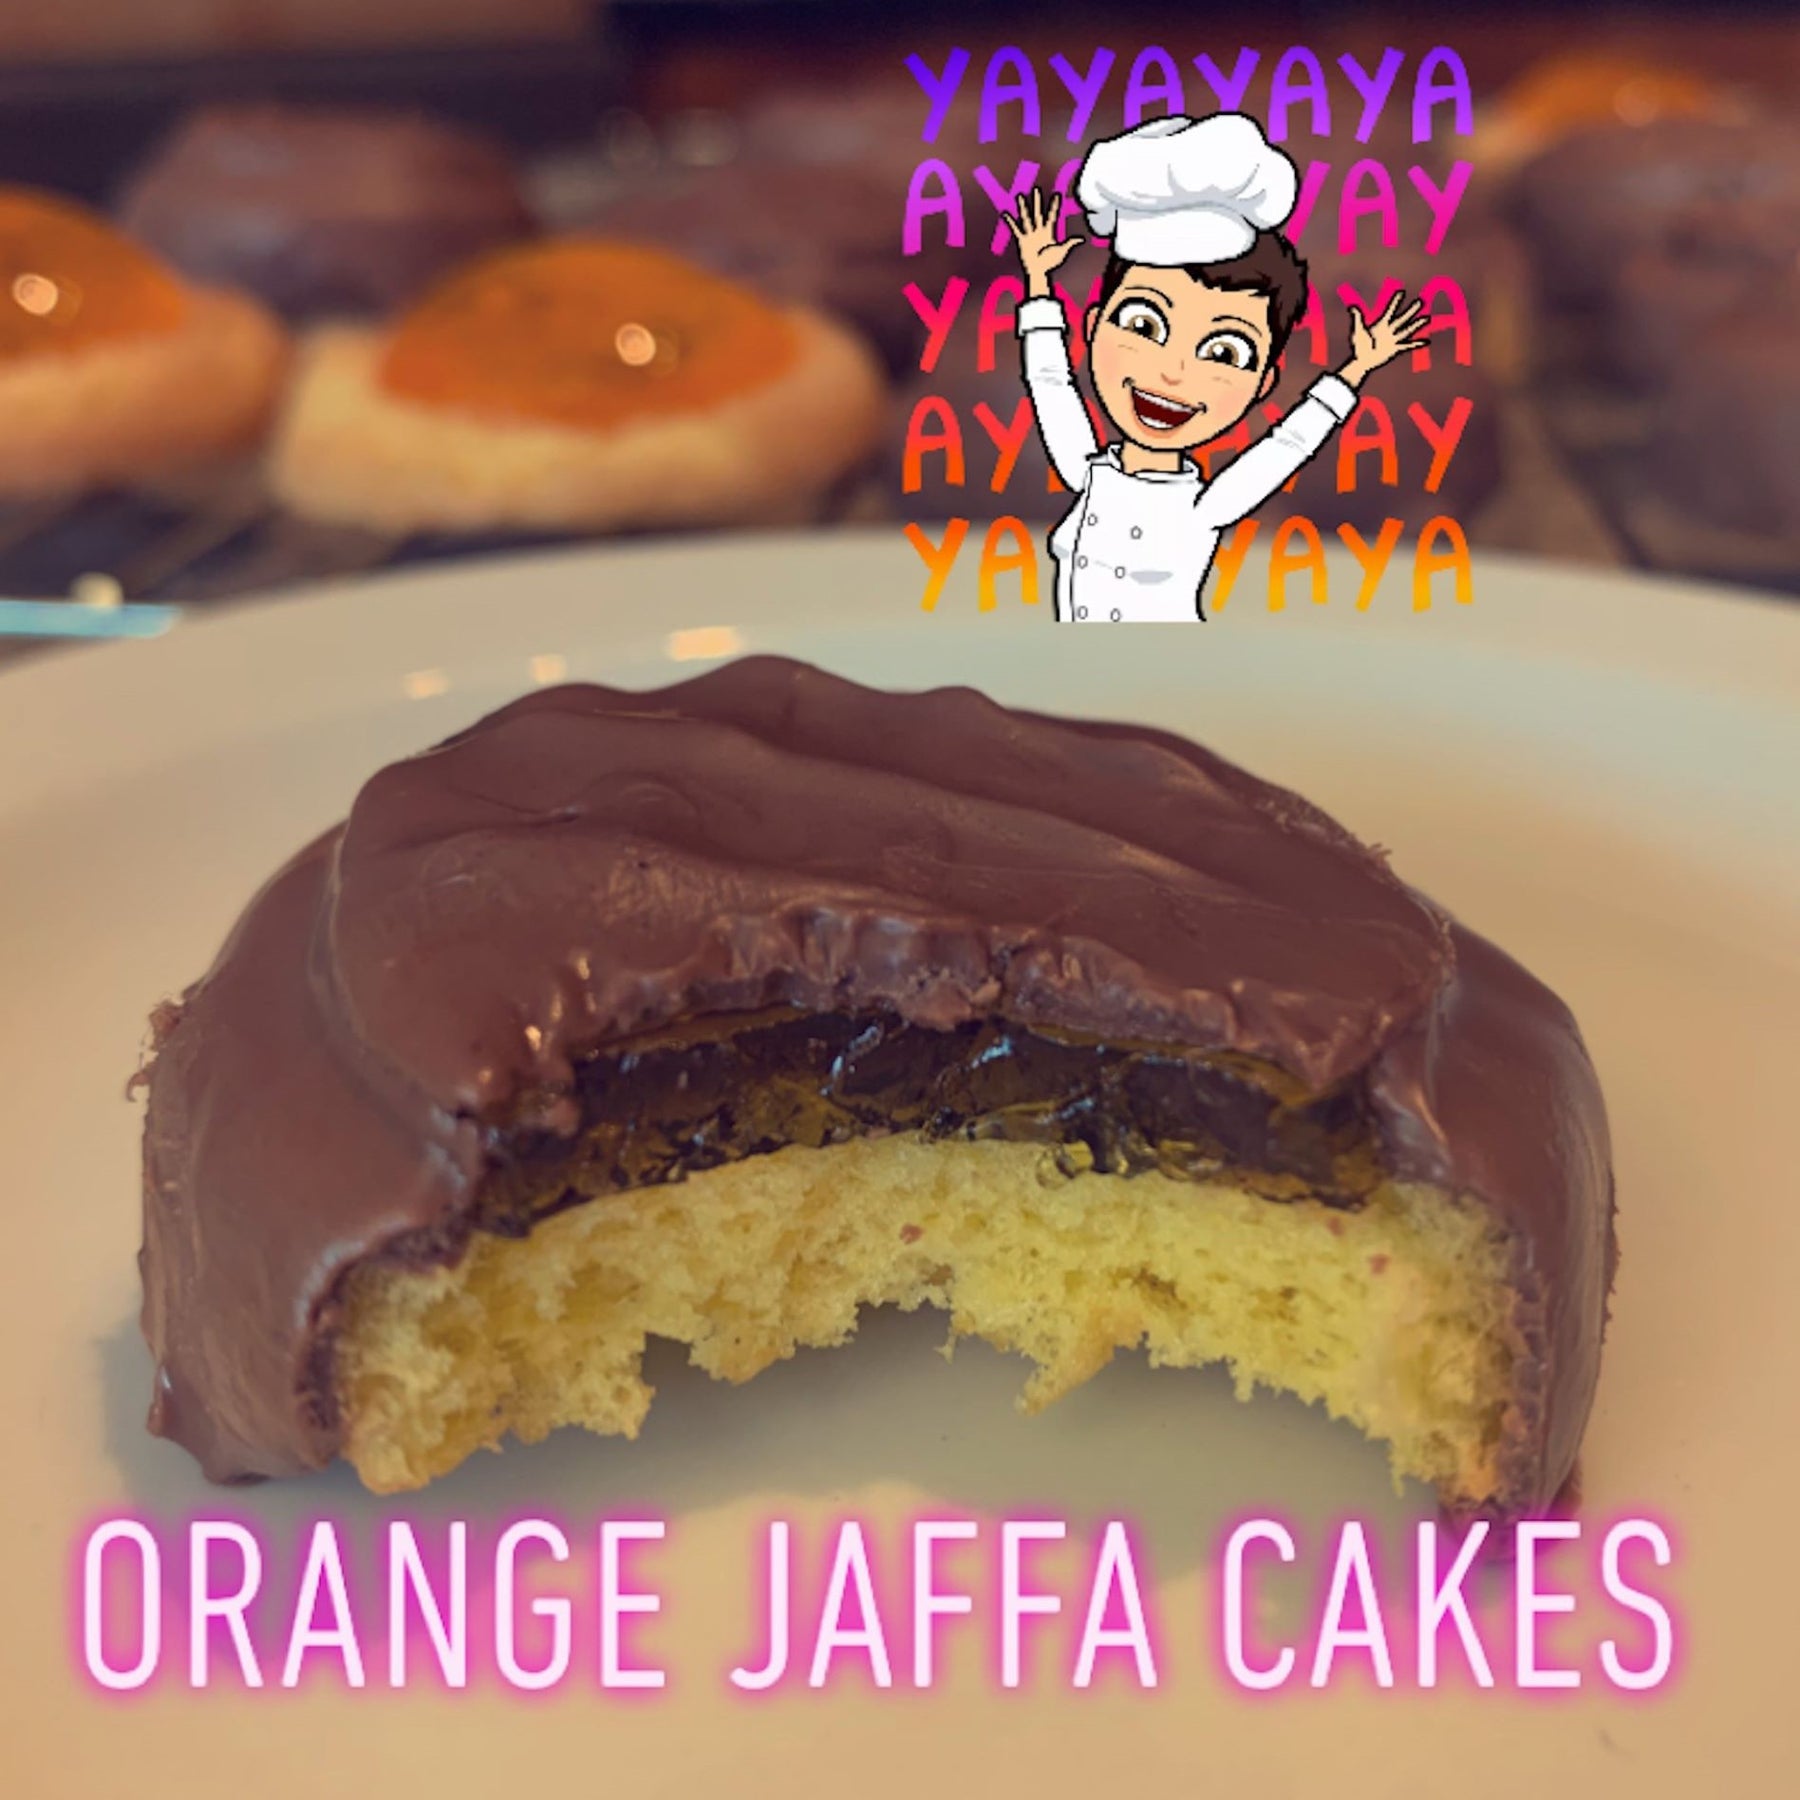 Orange Jaffa Cakes